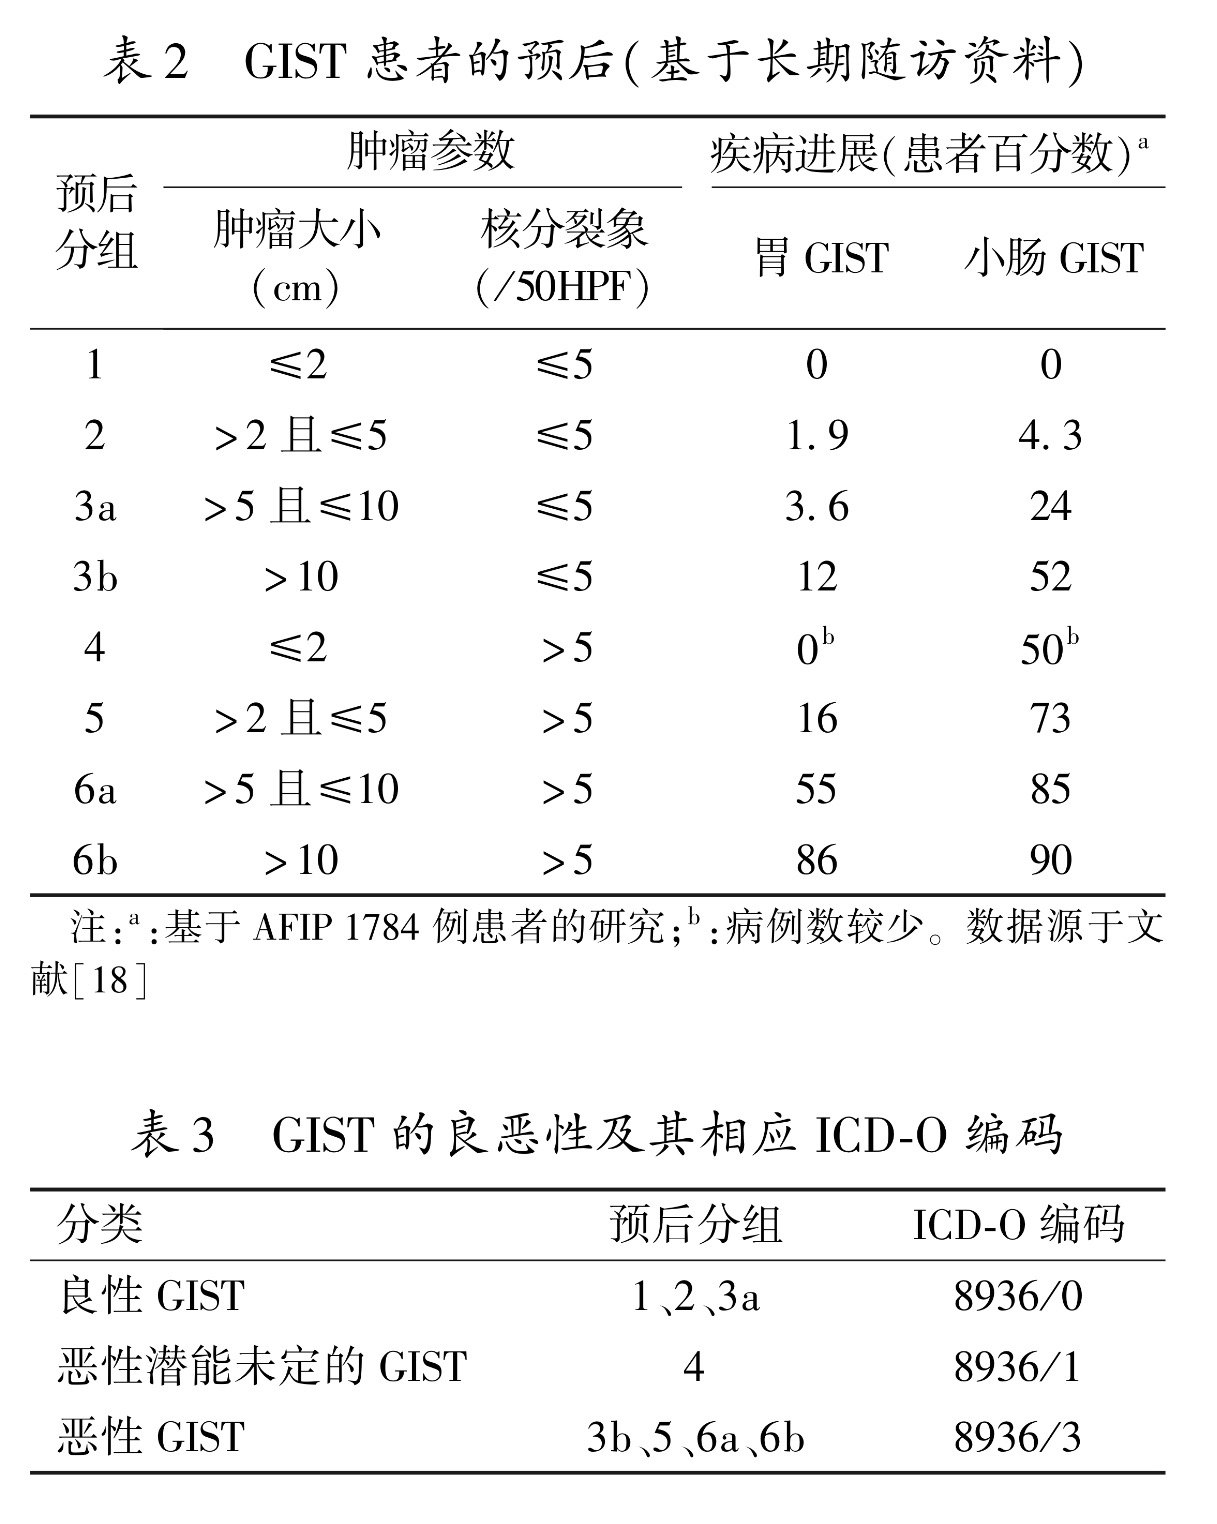 中国胃肠间质瘤诊断治疗共识(2013年版)